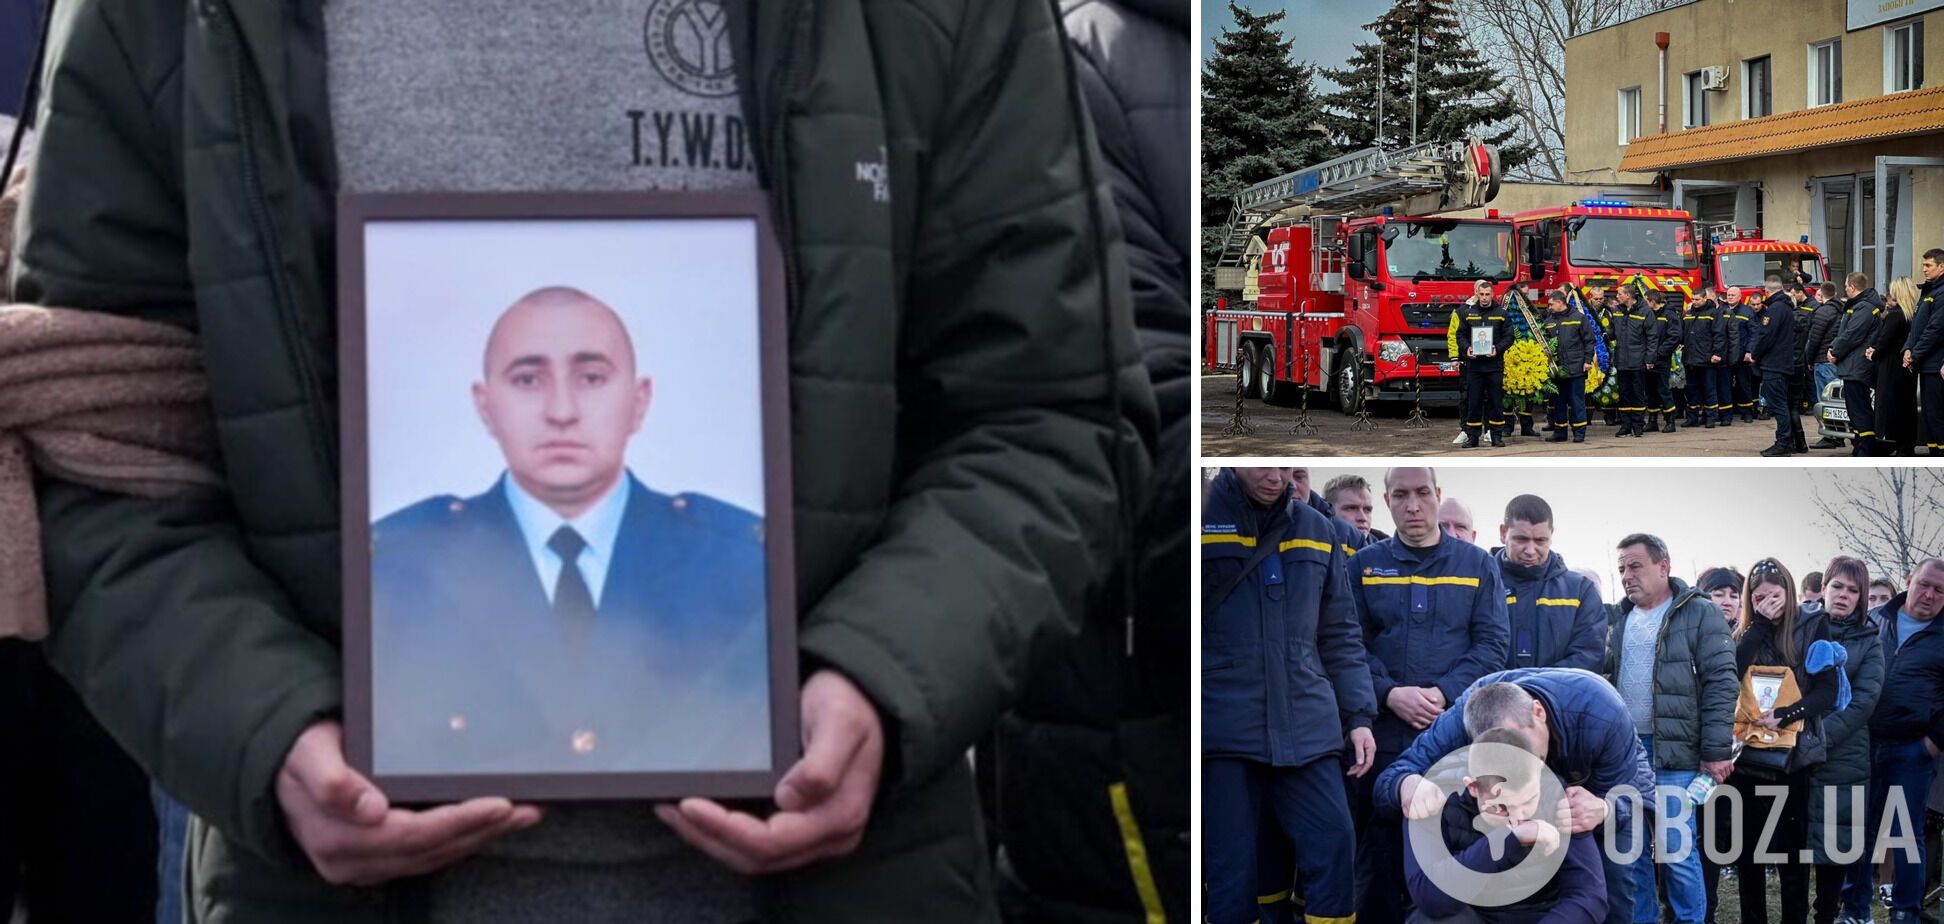 Ранения были несовместимы с жизнью: в Одессе простились со спасателем, которого РФ убила ударом по городу. Фото и видео